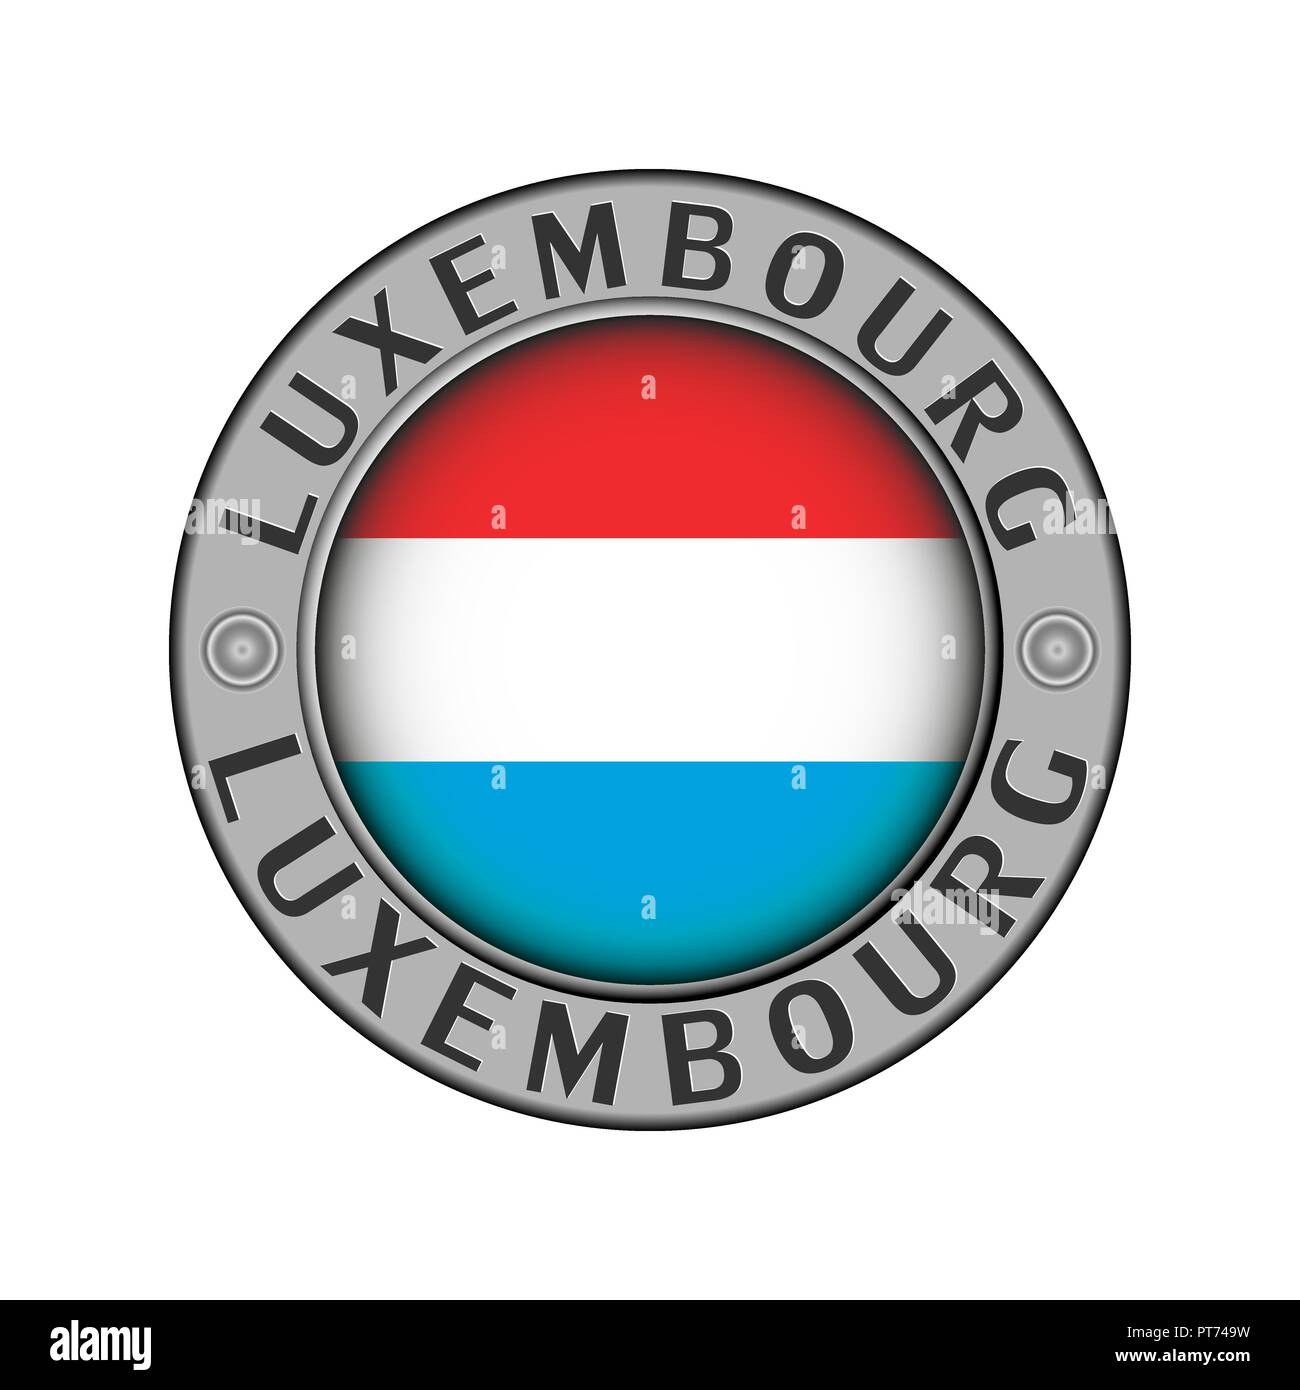 Rotondo di metallo medaglione con il nome del paese di Lussemburgo e un indicatore rotondo nel centro Illustrazione Vettoriale